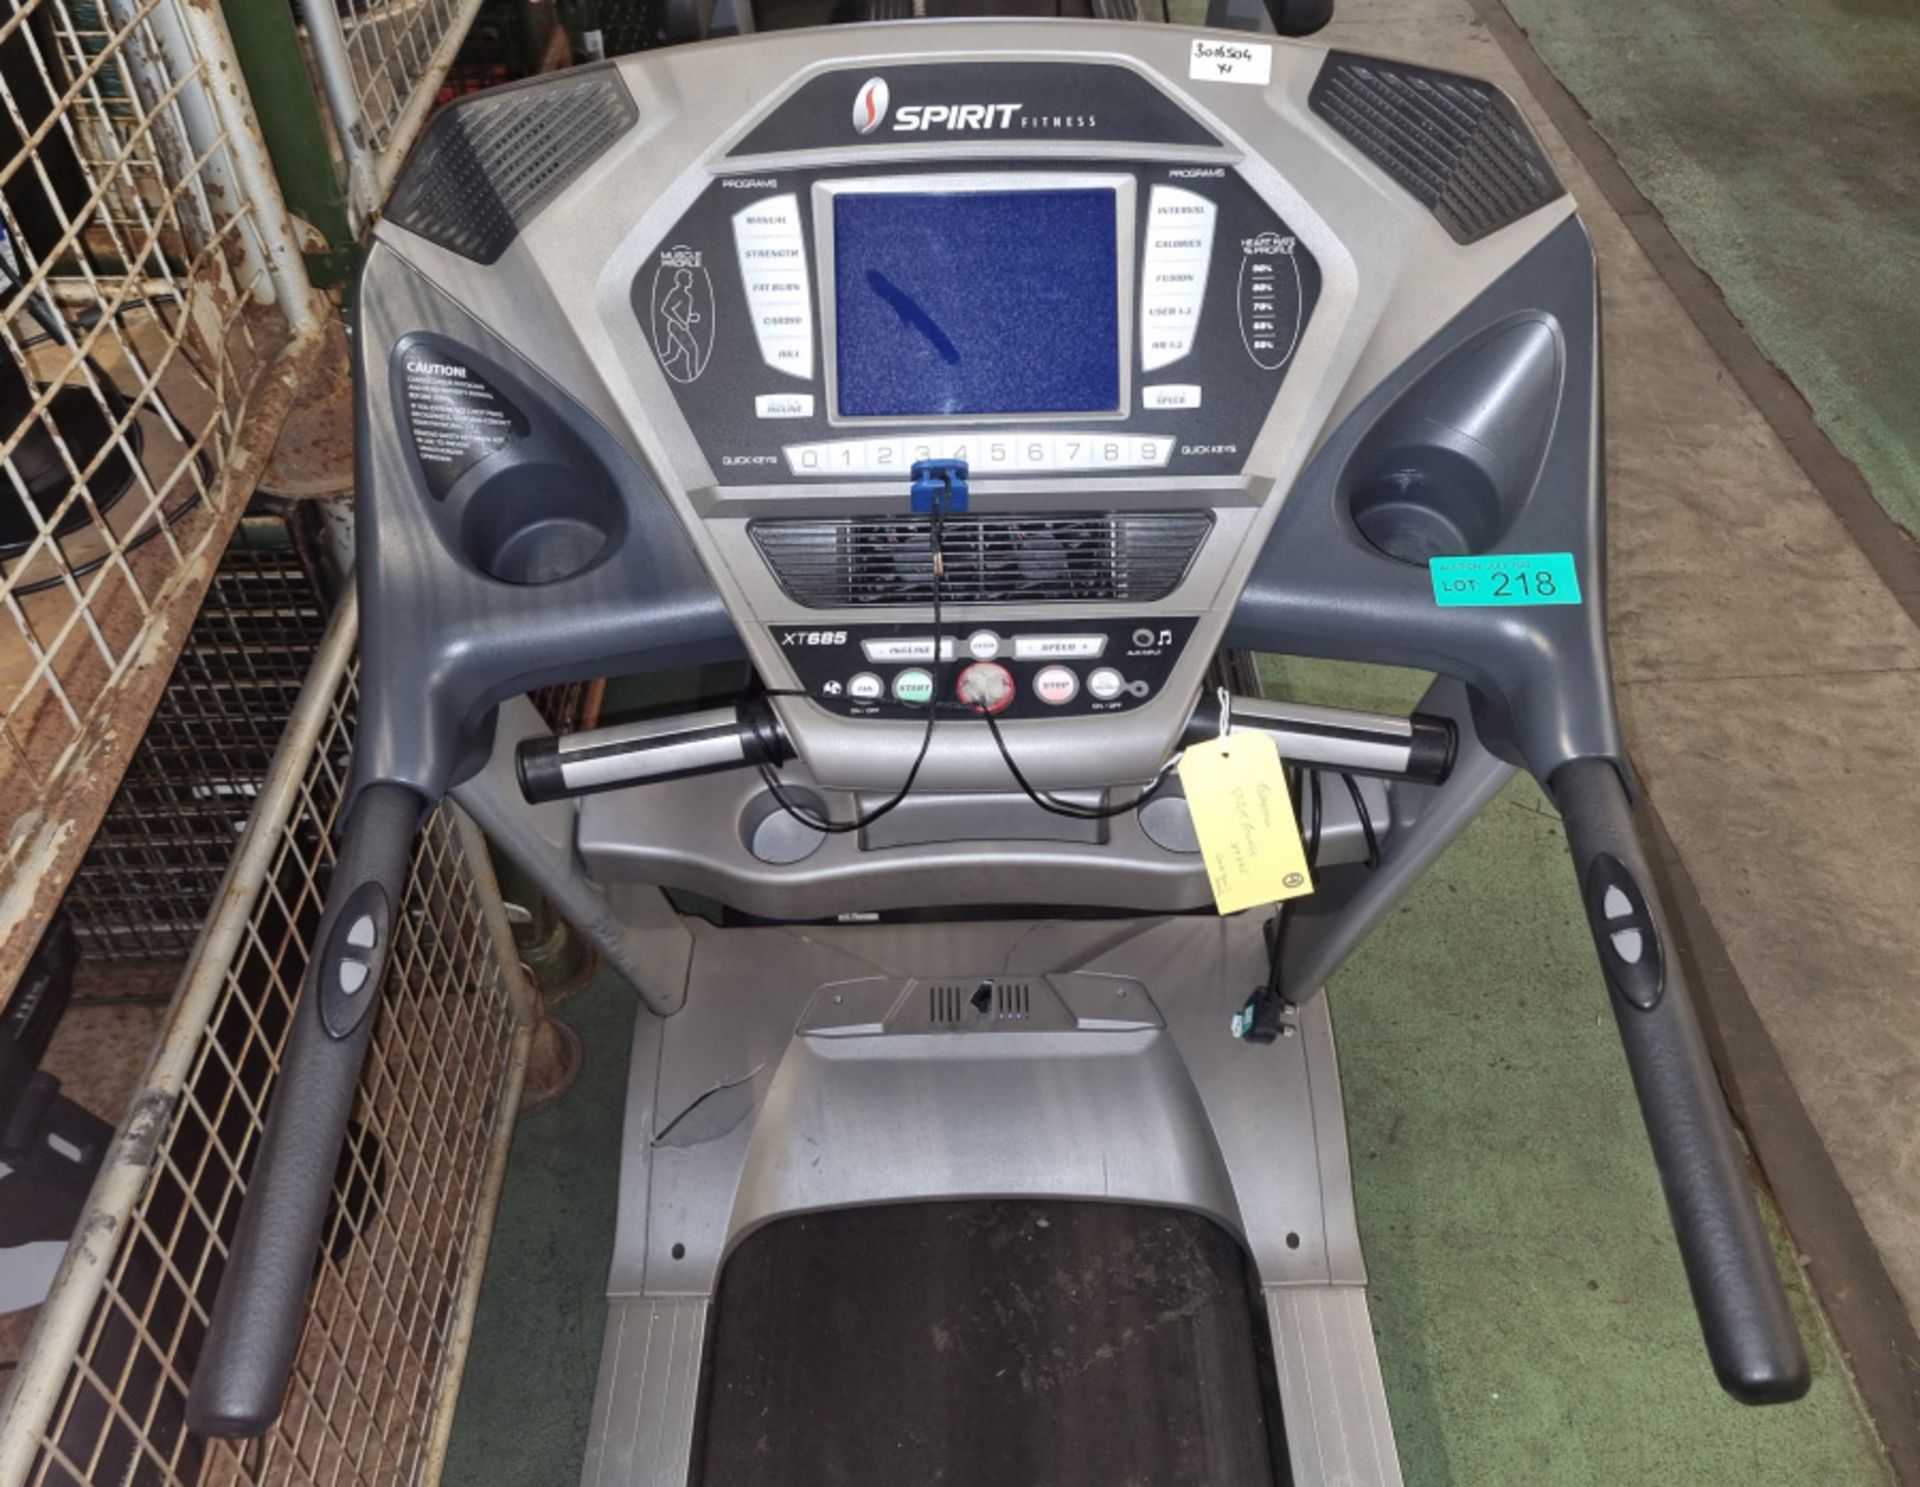 Spirit Fitness XT685 treadmill L80 x W190 x H145cm - Image 3 of 6